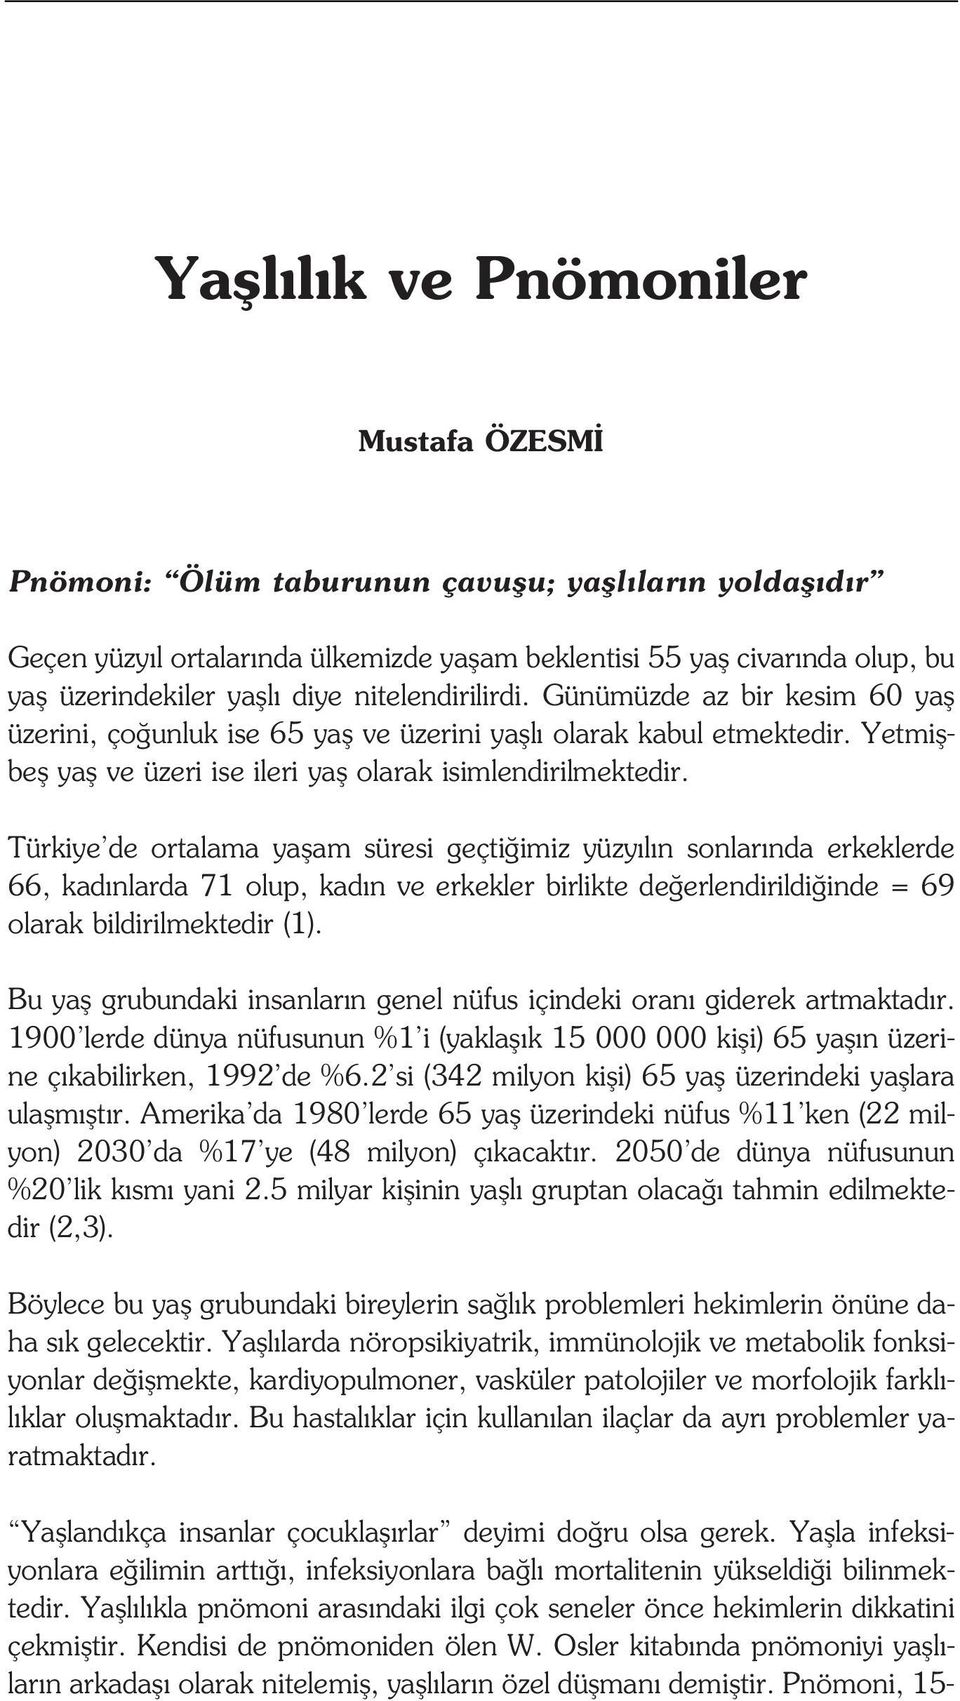 Türkiye de ortalama yaflam süresi geçti imiz yüzy l n sonlar nda erkeklerde 66, kad nlarda 71 olup, kad n ve erkekler birlikte de erlendirildi inde = 69 olarak bildirilmektedir (1).